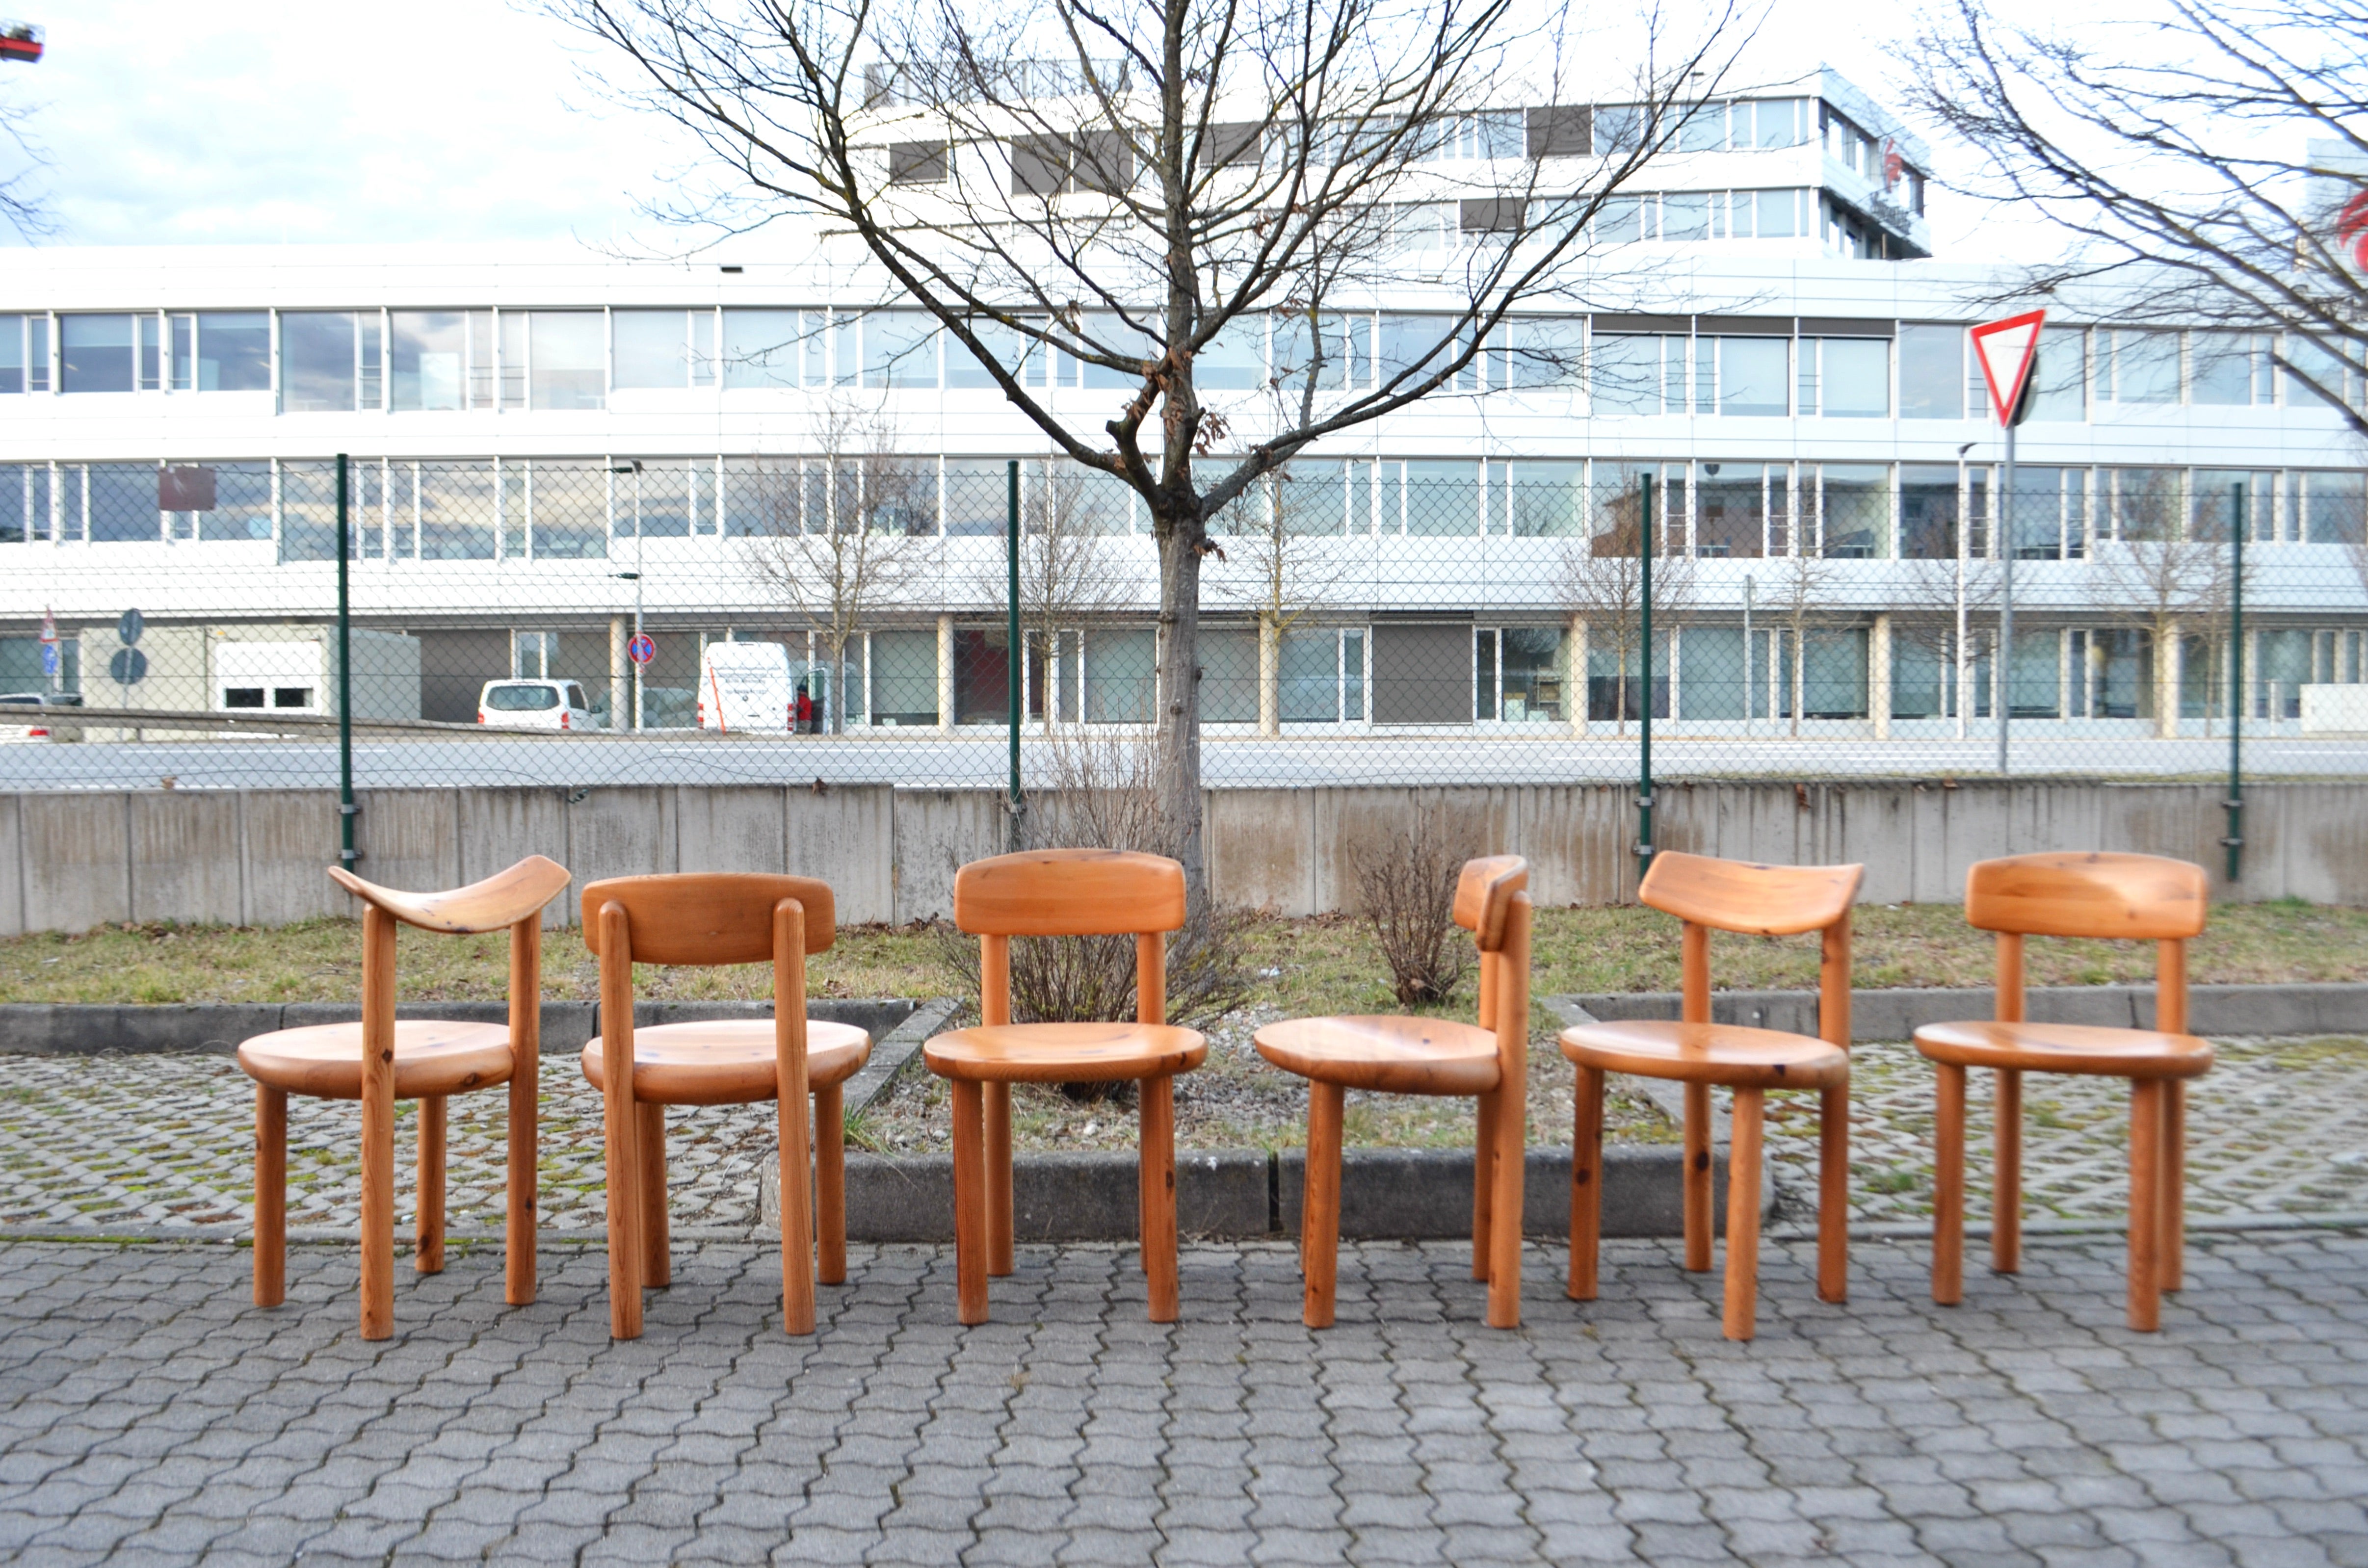 Esszimmerstühle, entworfen von Rainer Daumiller und hergestellt von Hirtshals Savvaerk.
Modell mit flexiblem Rücken.
Massives skandinavisches Kiefernholz.
Die Version ist lackiert.
Diese Stühle sind sehr bequem.
Die Sitzfläche ist perfekt geformt